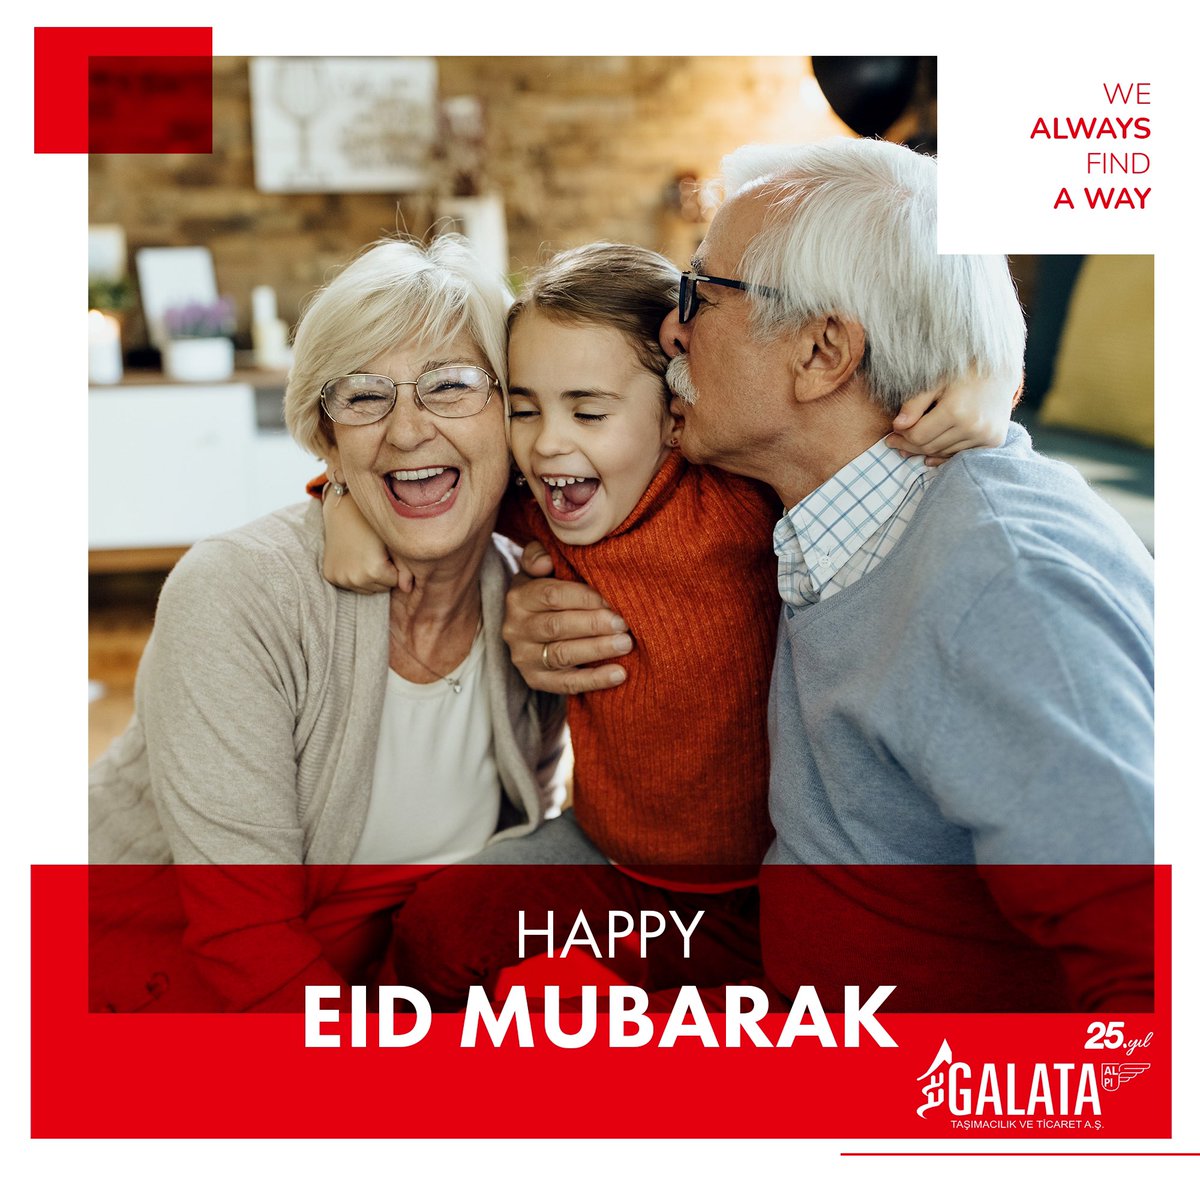 Ailenizle ve sevdikleriniz ile beraber mutlu bayramlar dileriz.
#GalataTaşımacılık #KurbanBayramı #Lojistik #Galpi #bizherzamanbiryolbuluruz

We wish everyone a happy and peaceful Eid.
#GalataTasimacilik #EidMubarak #Galpi #Fathersday #wealwaysfindaway